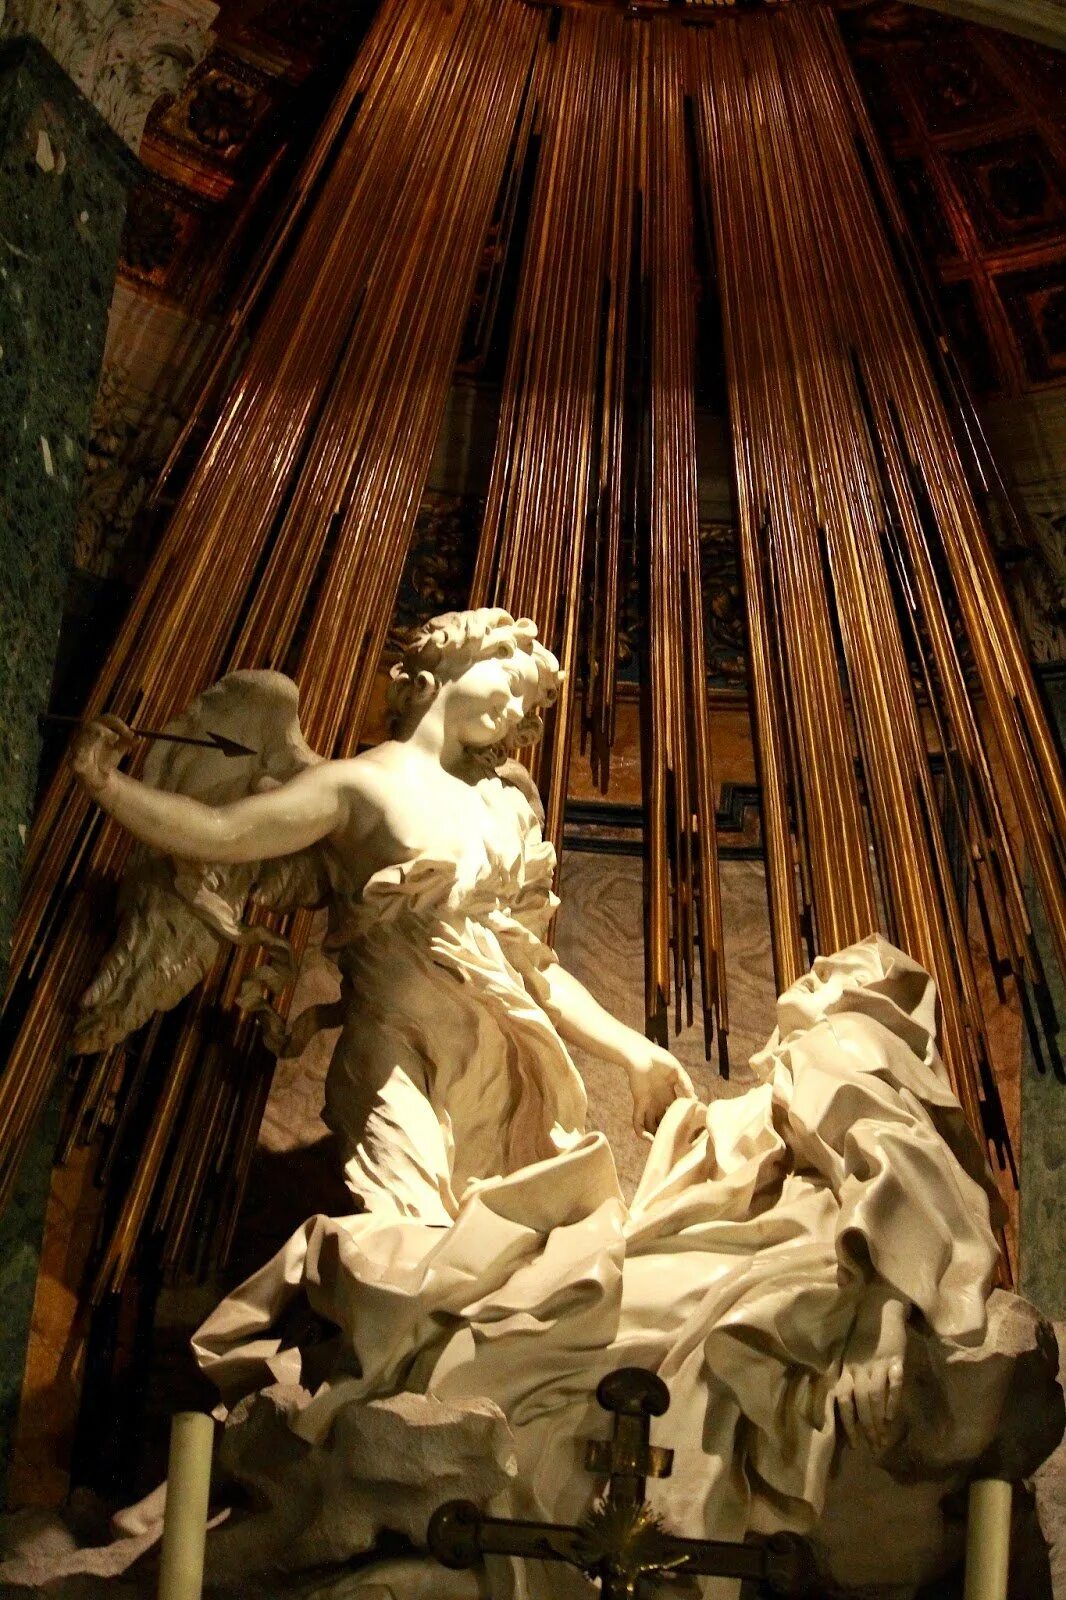 Экстаз Святой Терезы Бернини. Скульптура Бернини экстаз Святой Терезы. Джан Лоренцо Бернини экстаз Святой Терезы.